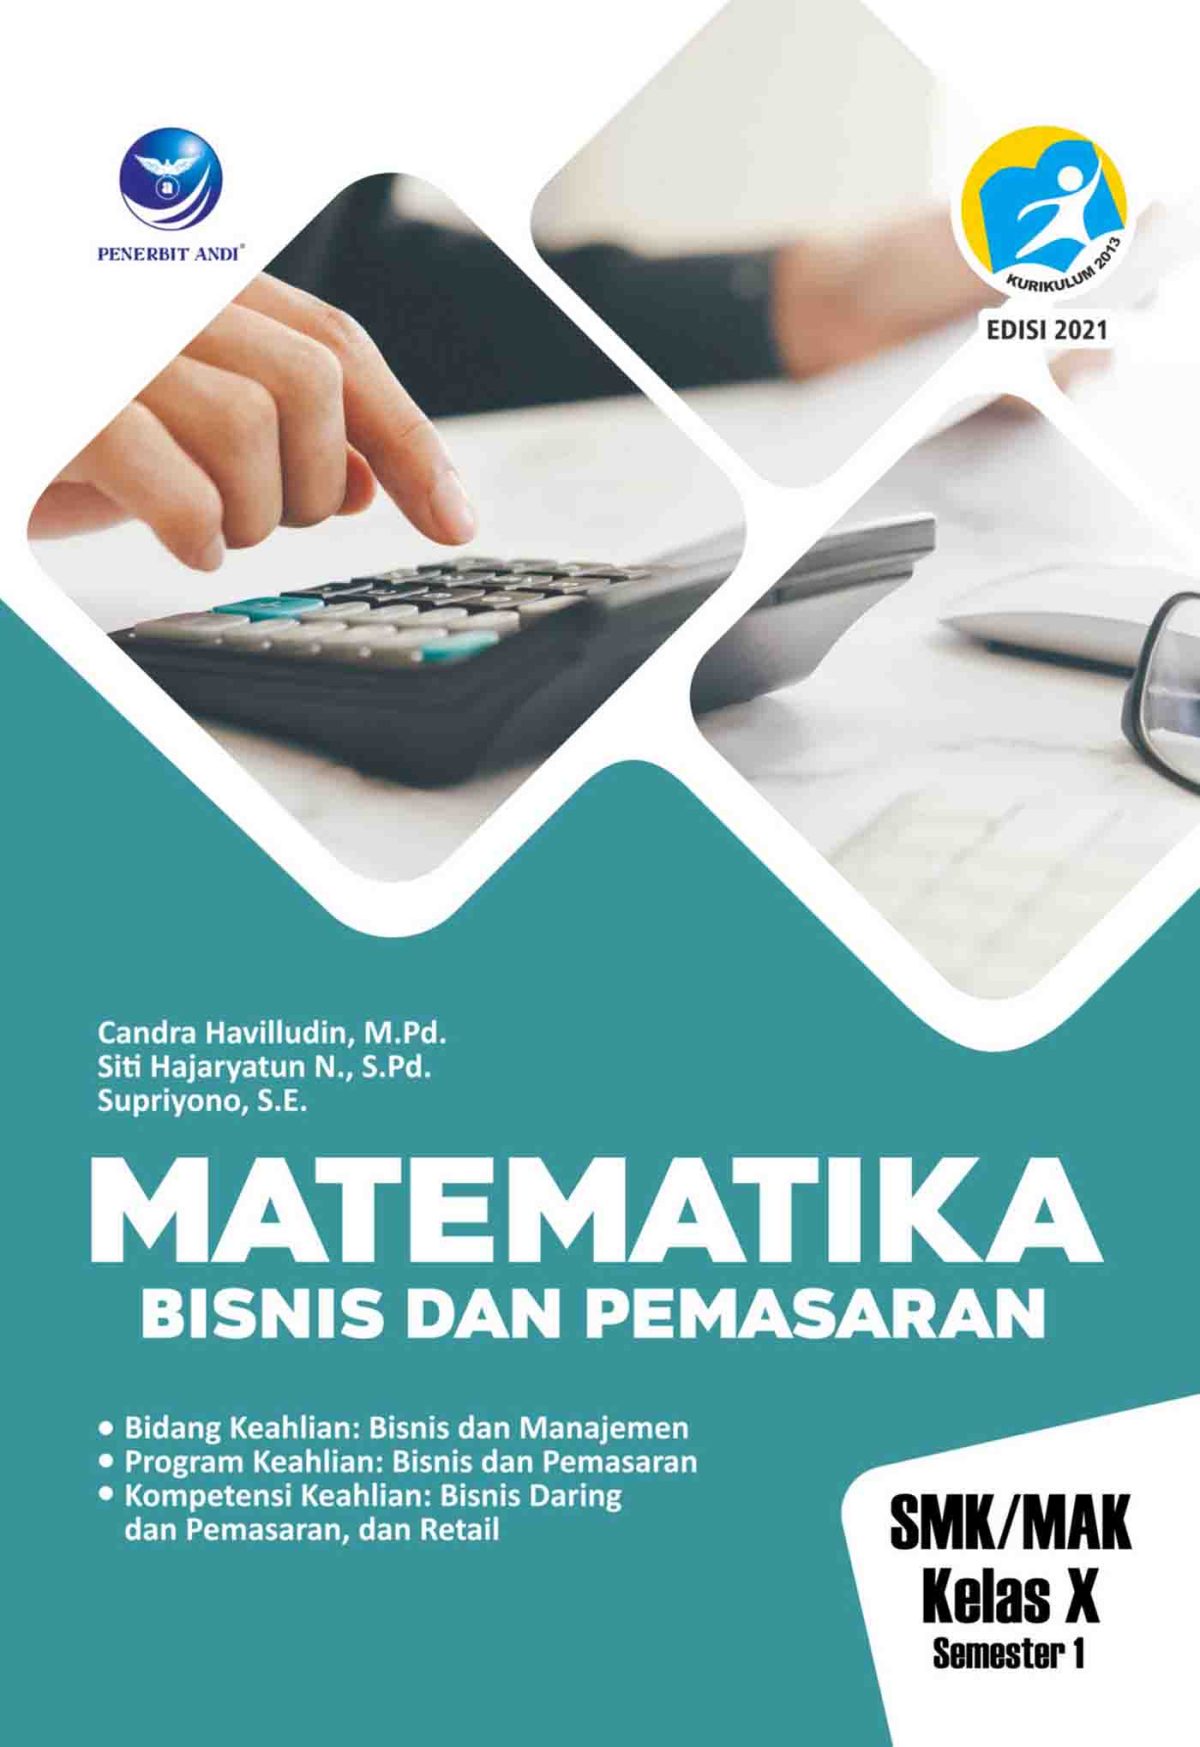 Matematika Bisnis dan Pemasaran X semester 1